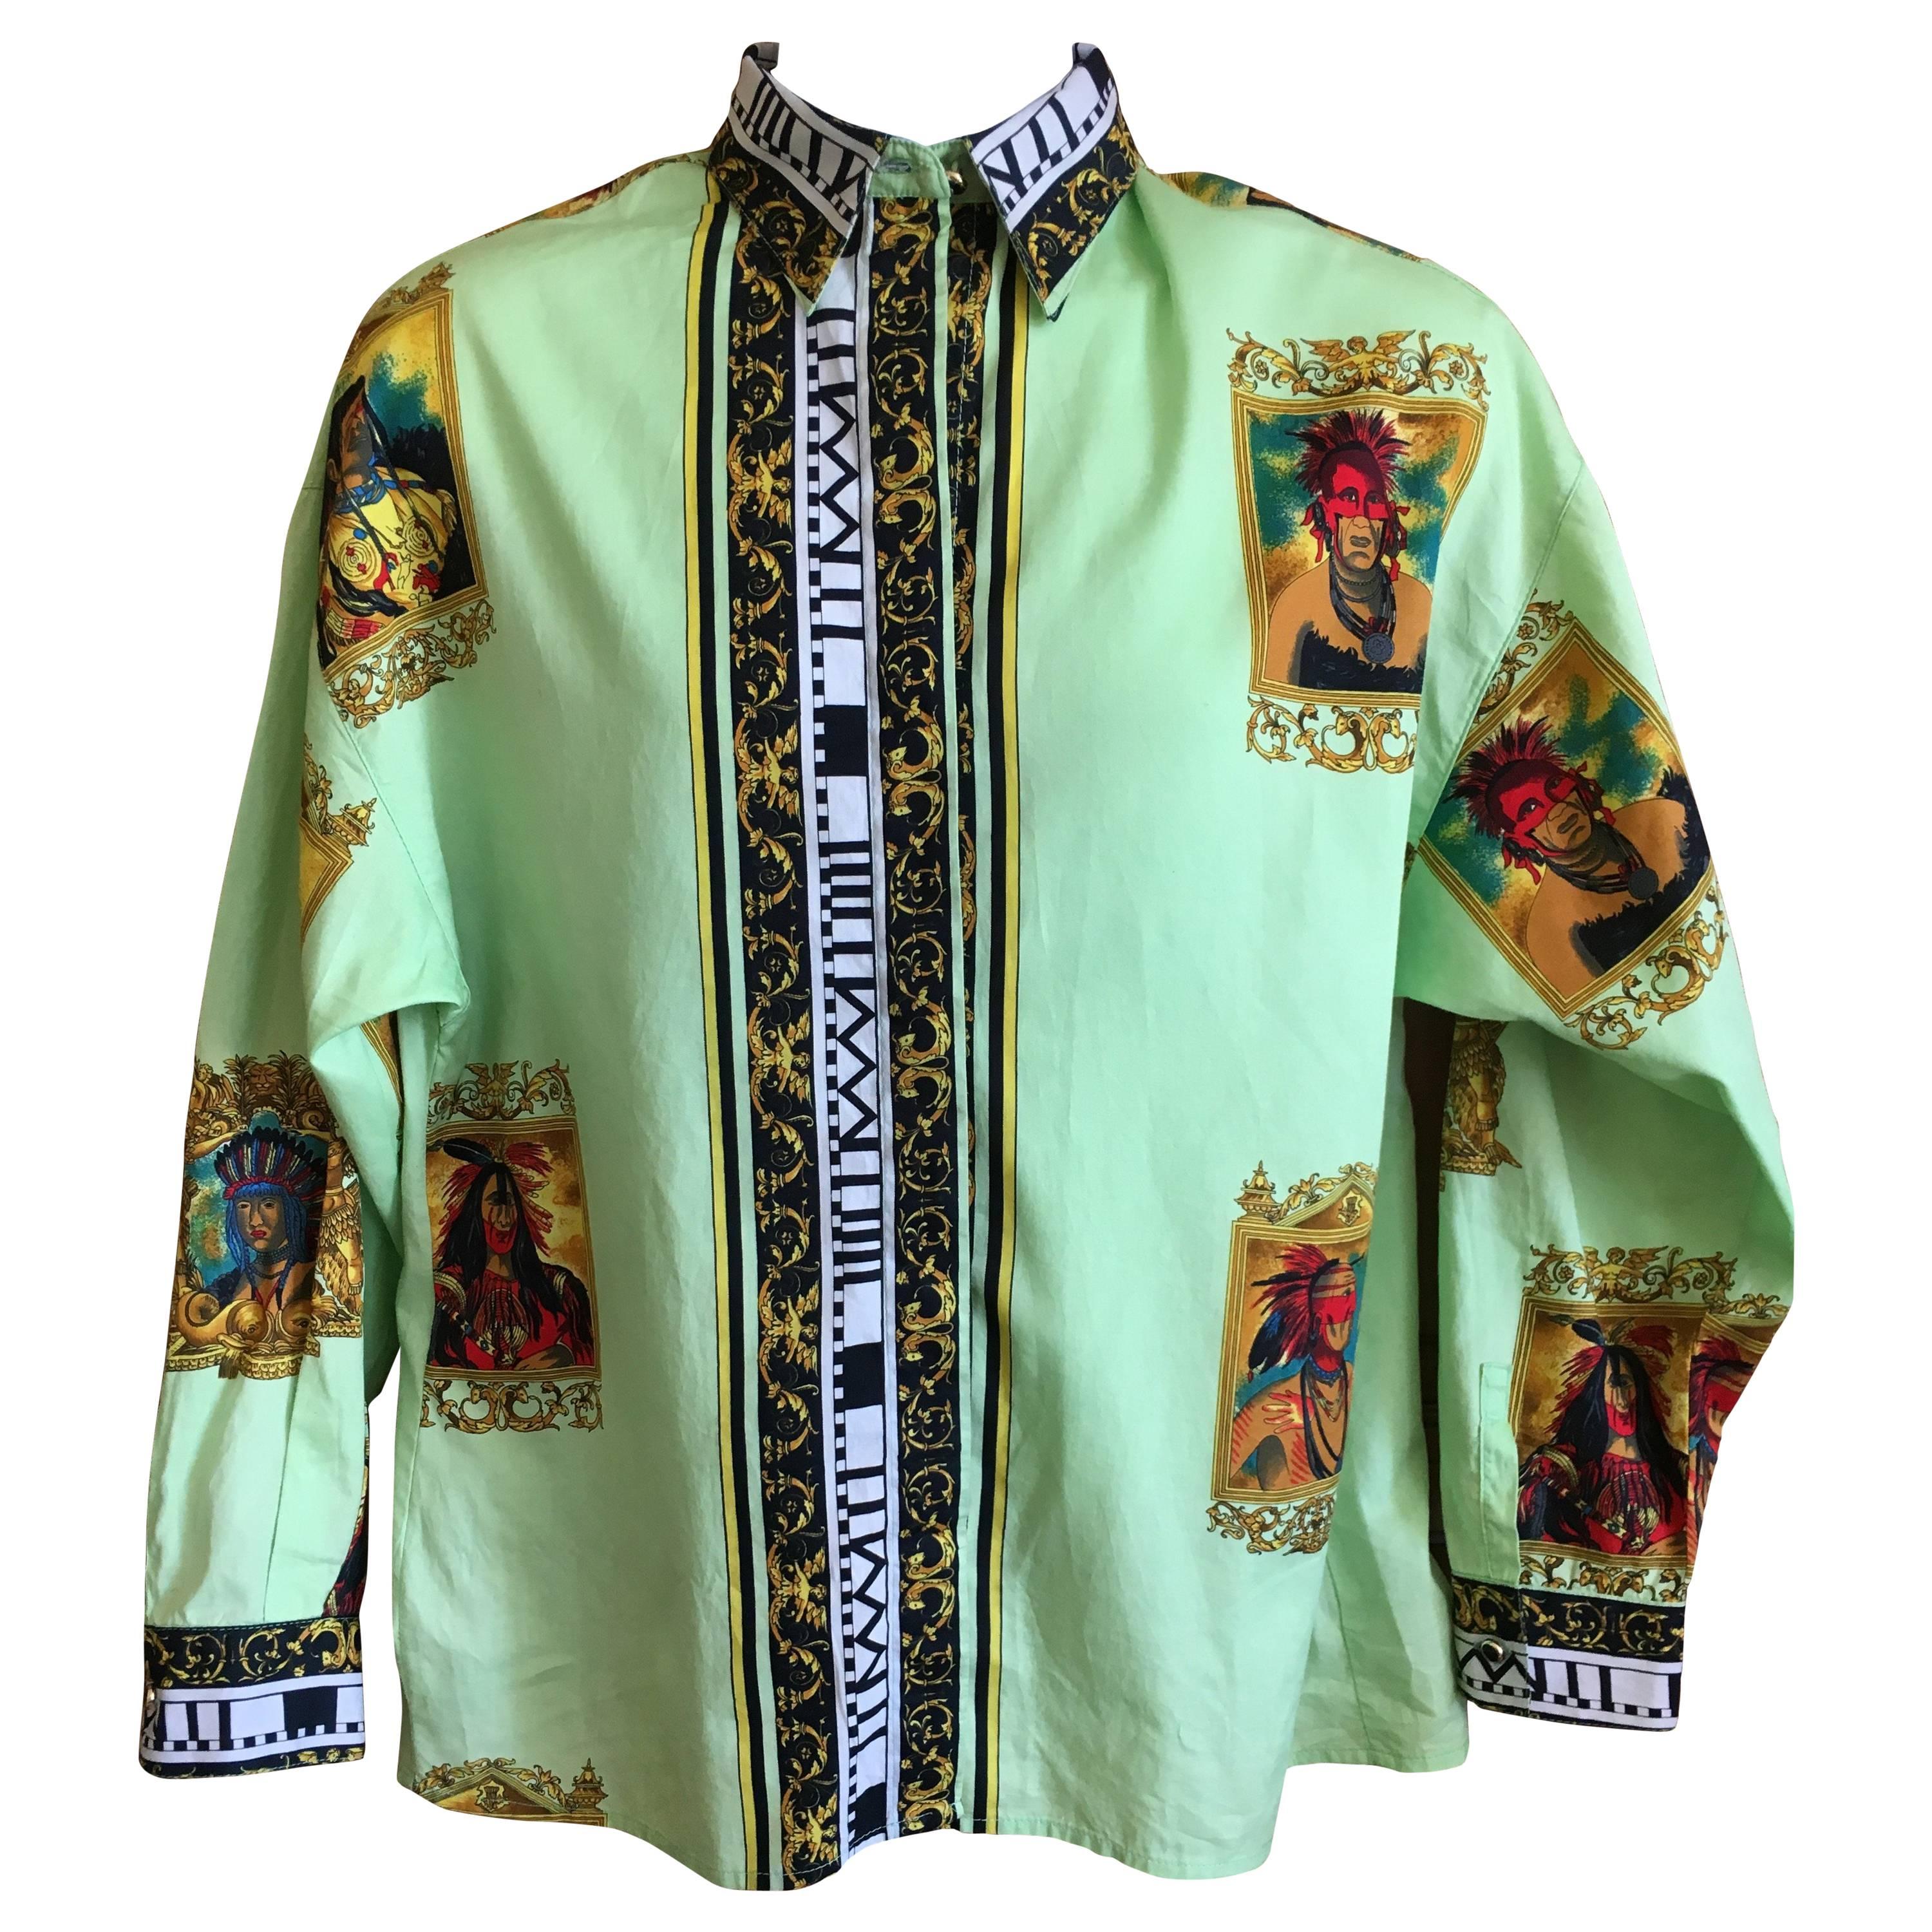 Versus Gianni Versace Rare1993 Cotton Indian Print Men's Large Shirt 